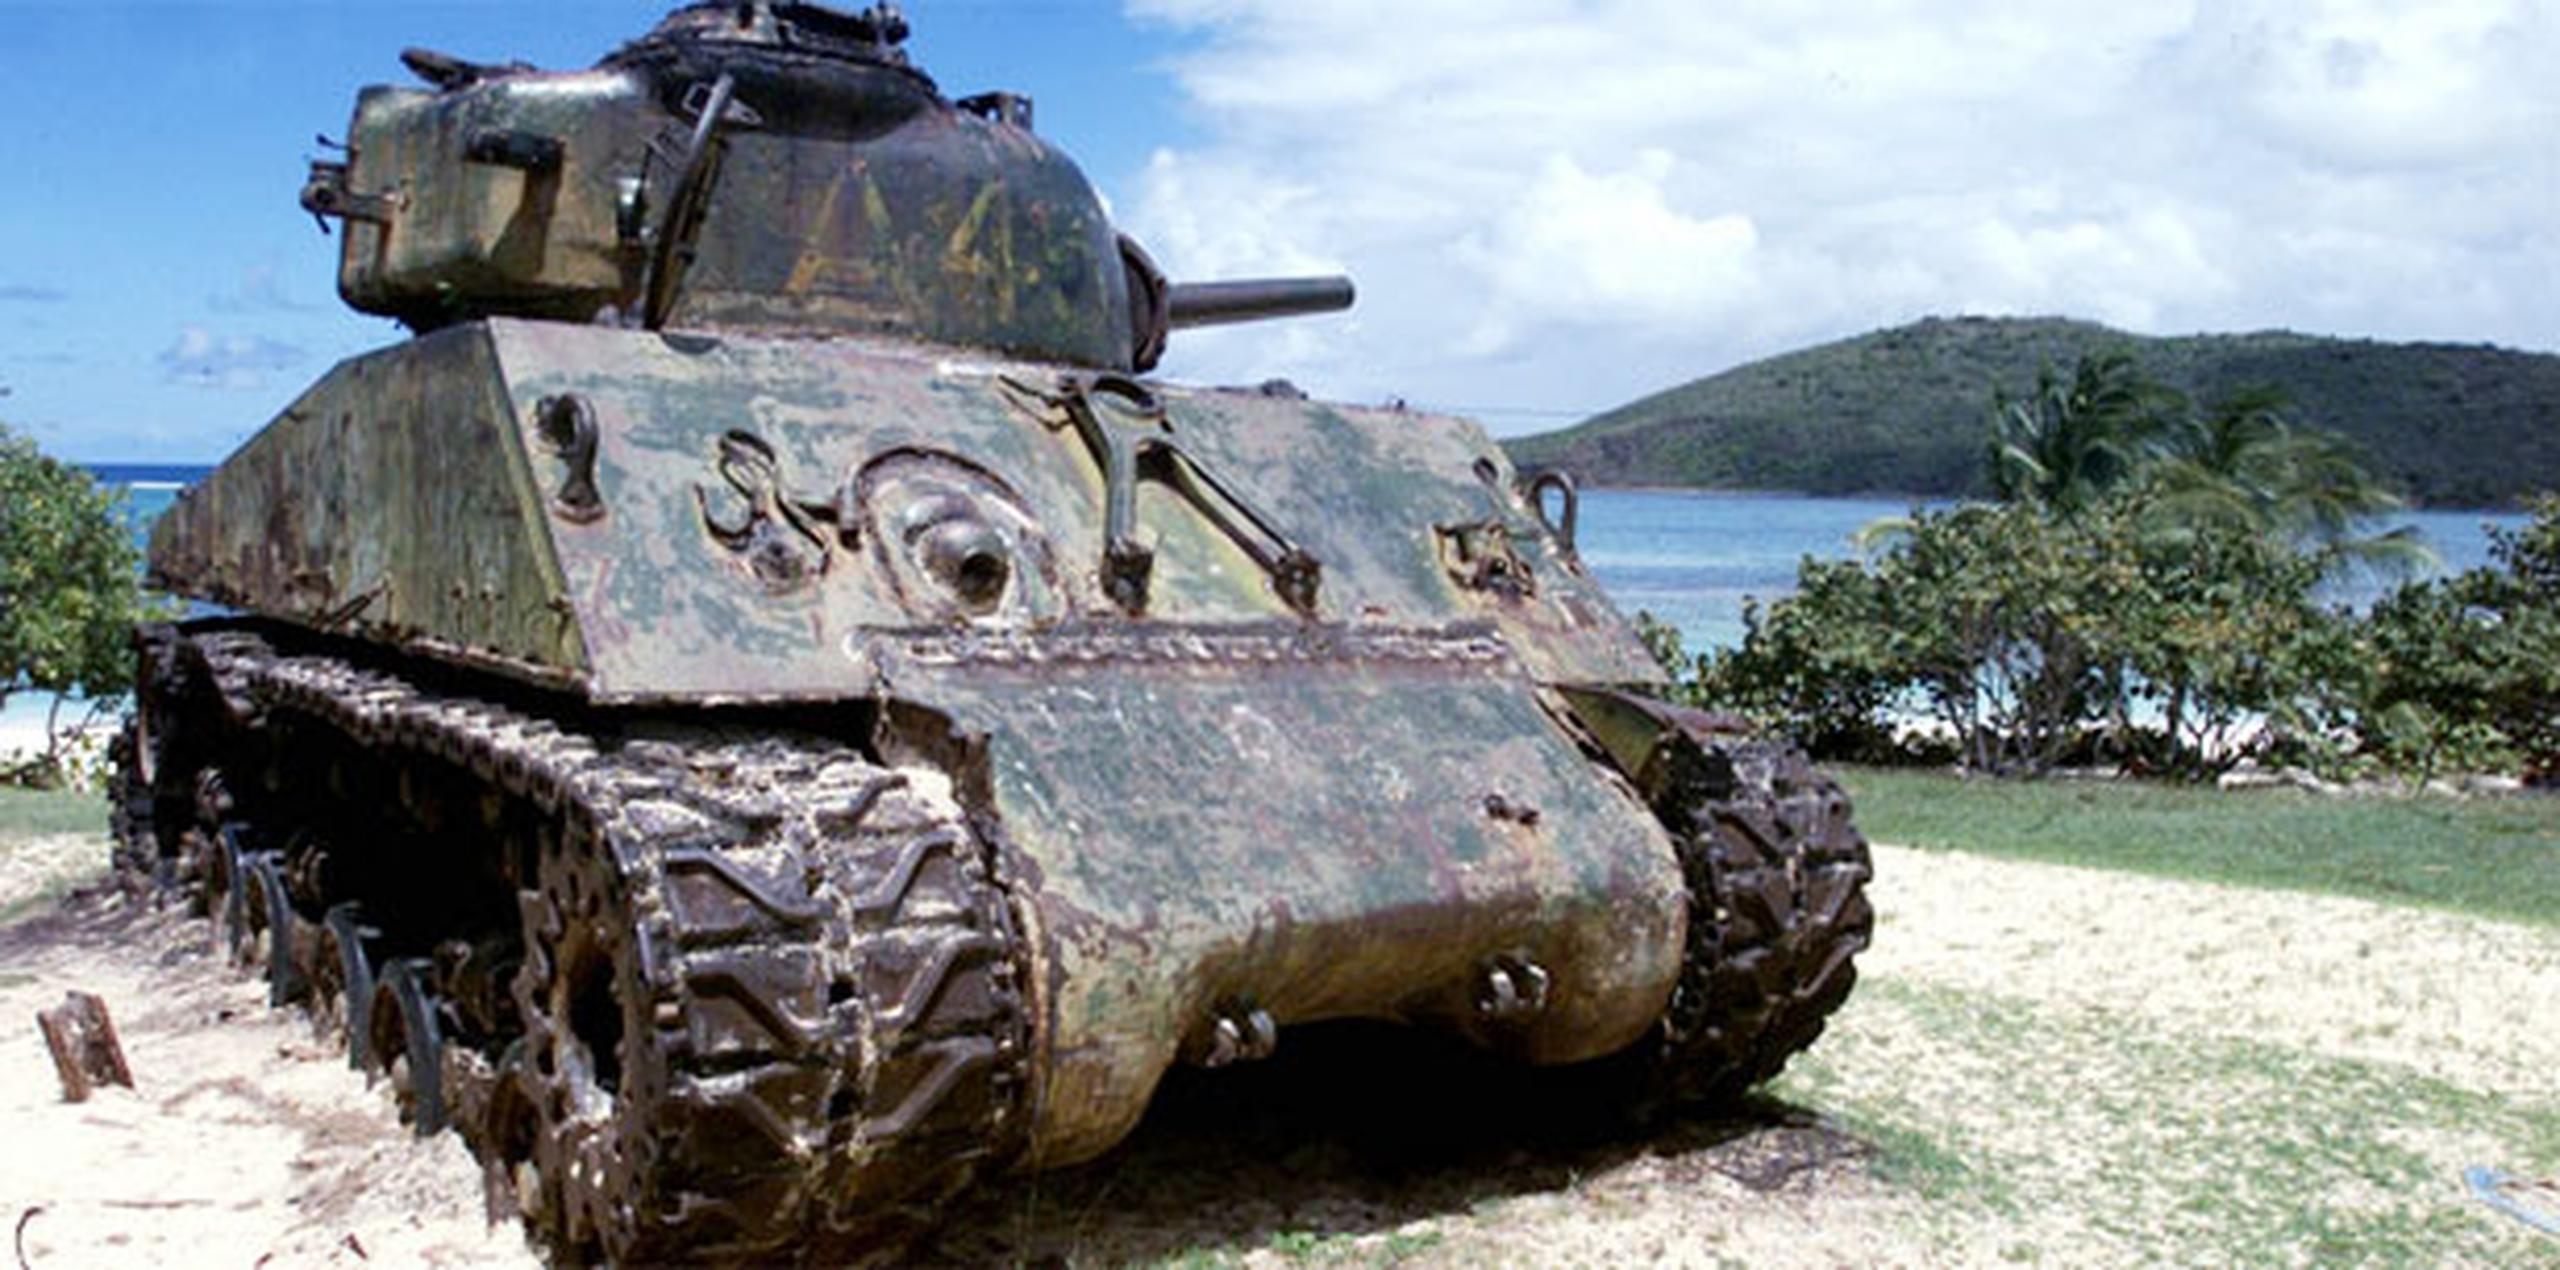 La niña recogió el artefacto cerca de un tanque militar oxidado que descansa sobre la arena, y con el que los turistas suelen retratarse. (Archivo)